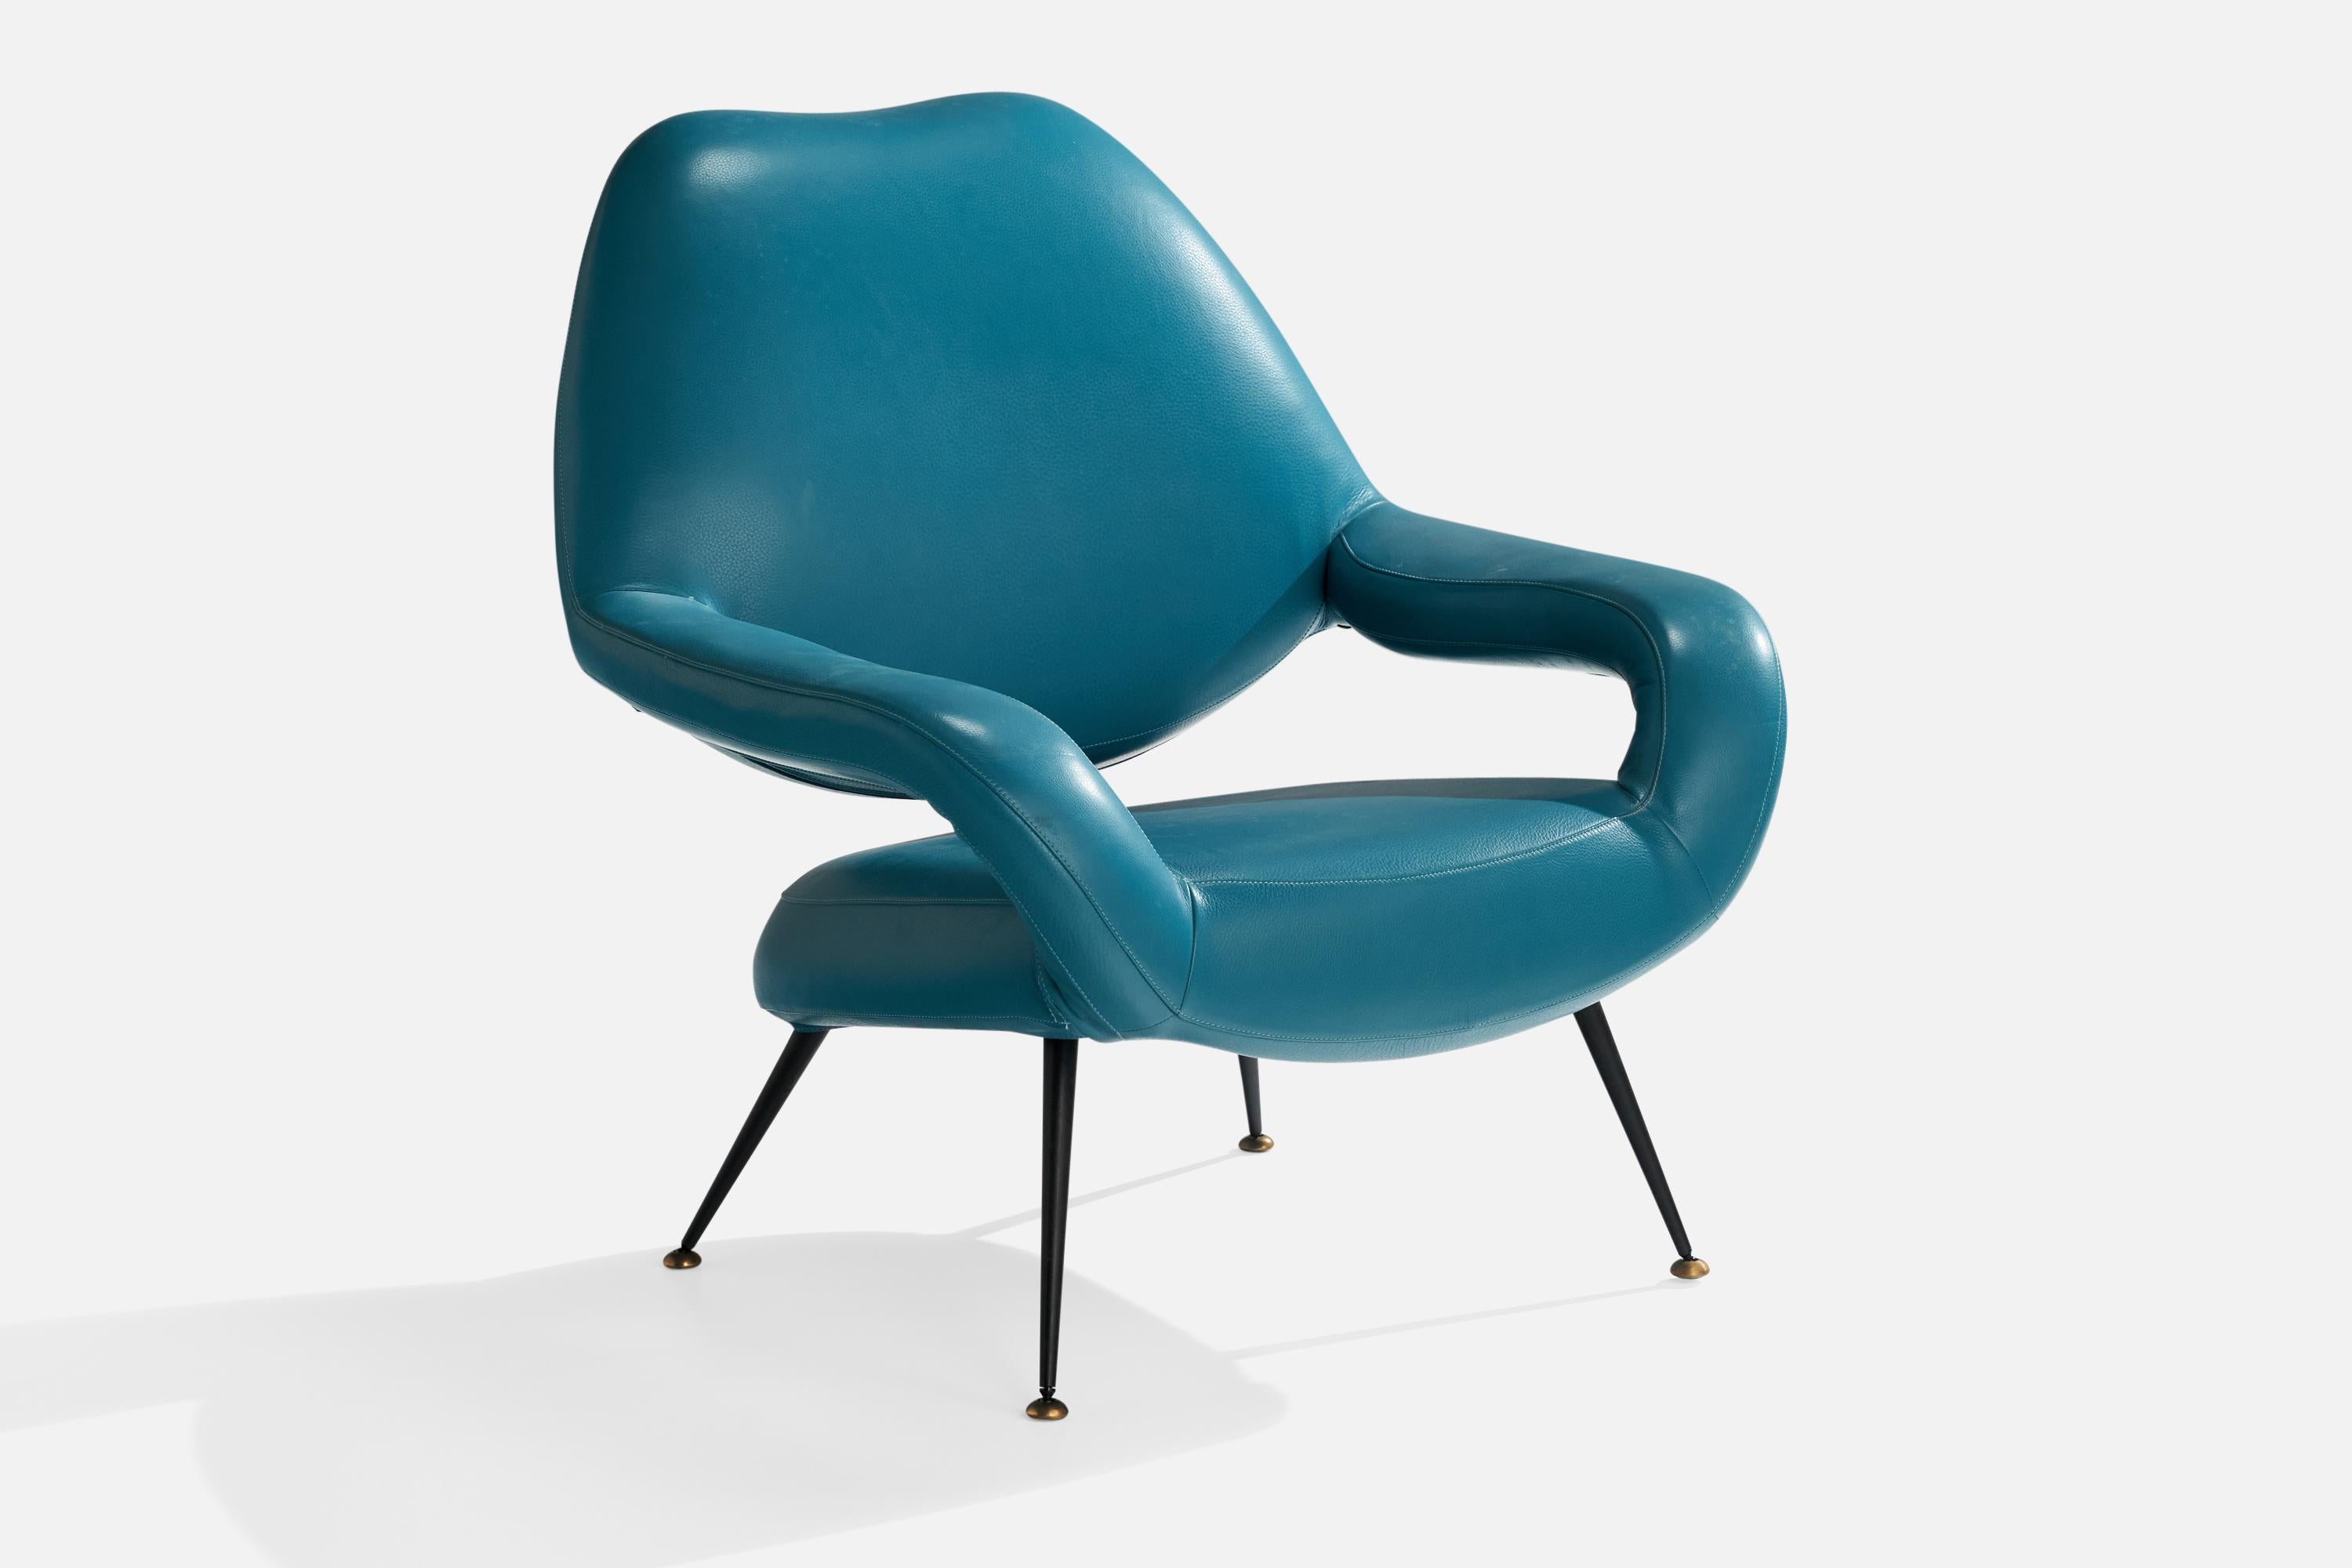 Chaise longue en cuir bleu, laiton et métal, modèle DU55a, conçue par Gastone Rinaldi vers 1955 et produite par Poltrona Frau, Italie, années 1990.

Hauteur du siège 15.5